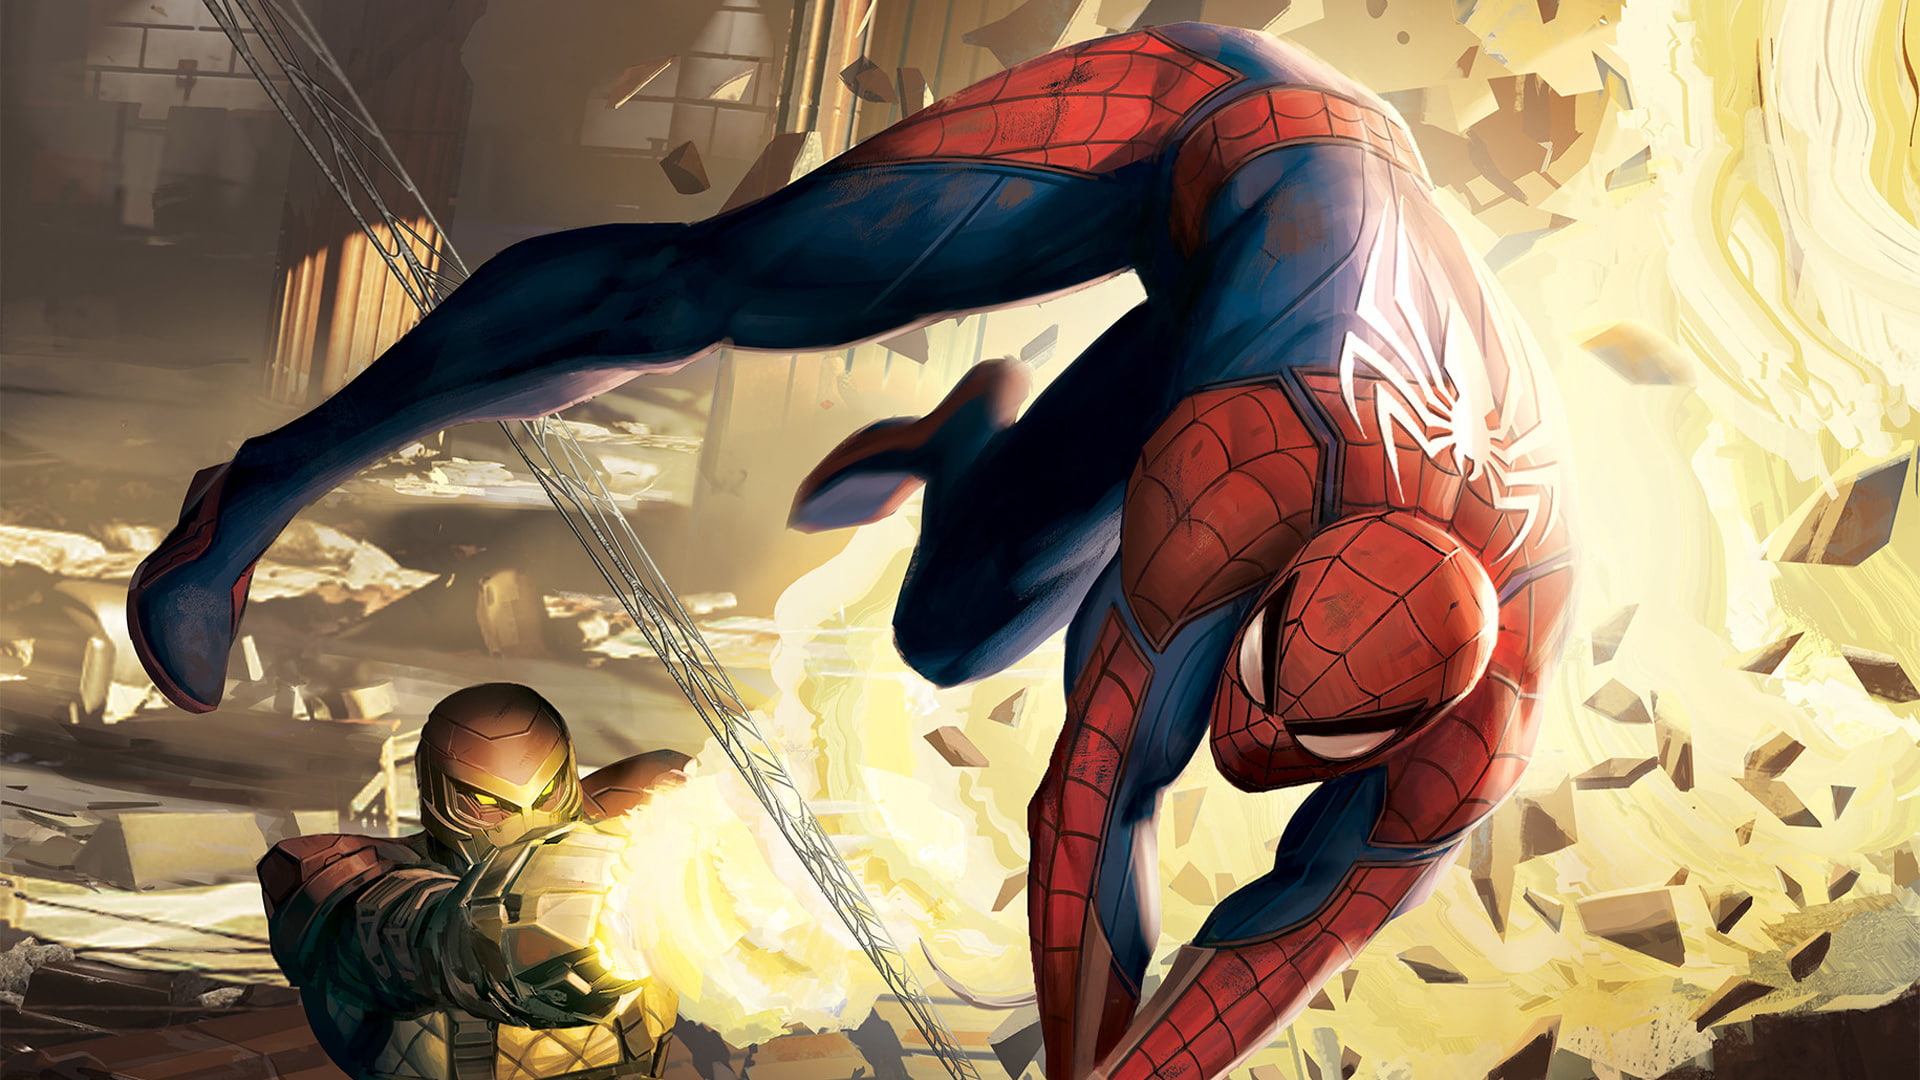 Spider-Man, Spider-Man (PS4), Shocker (Marvel Comics)